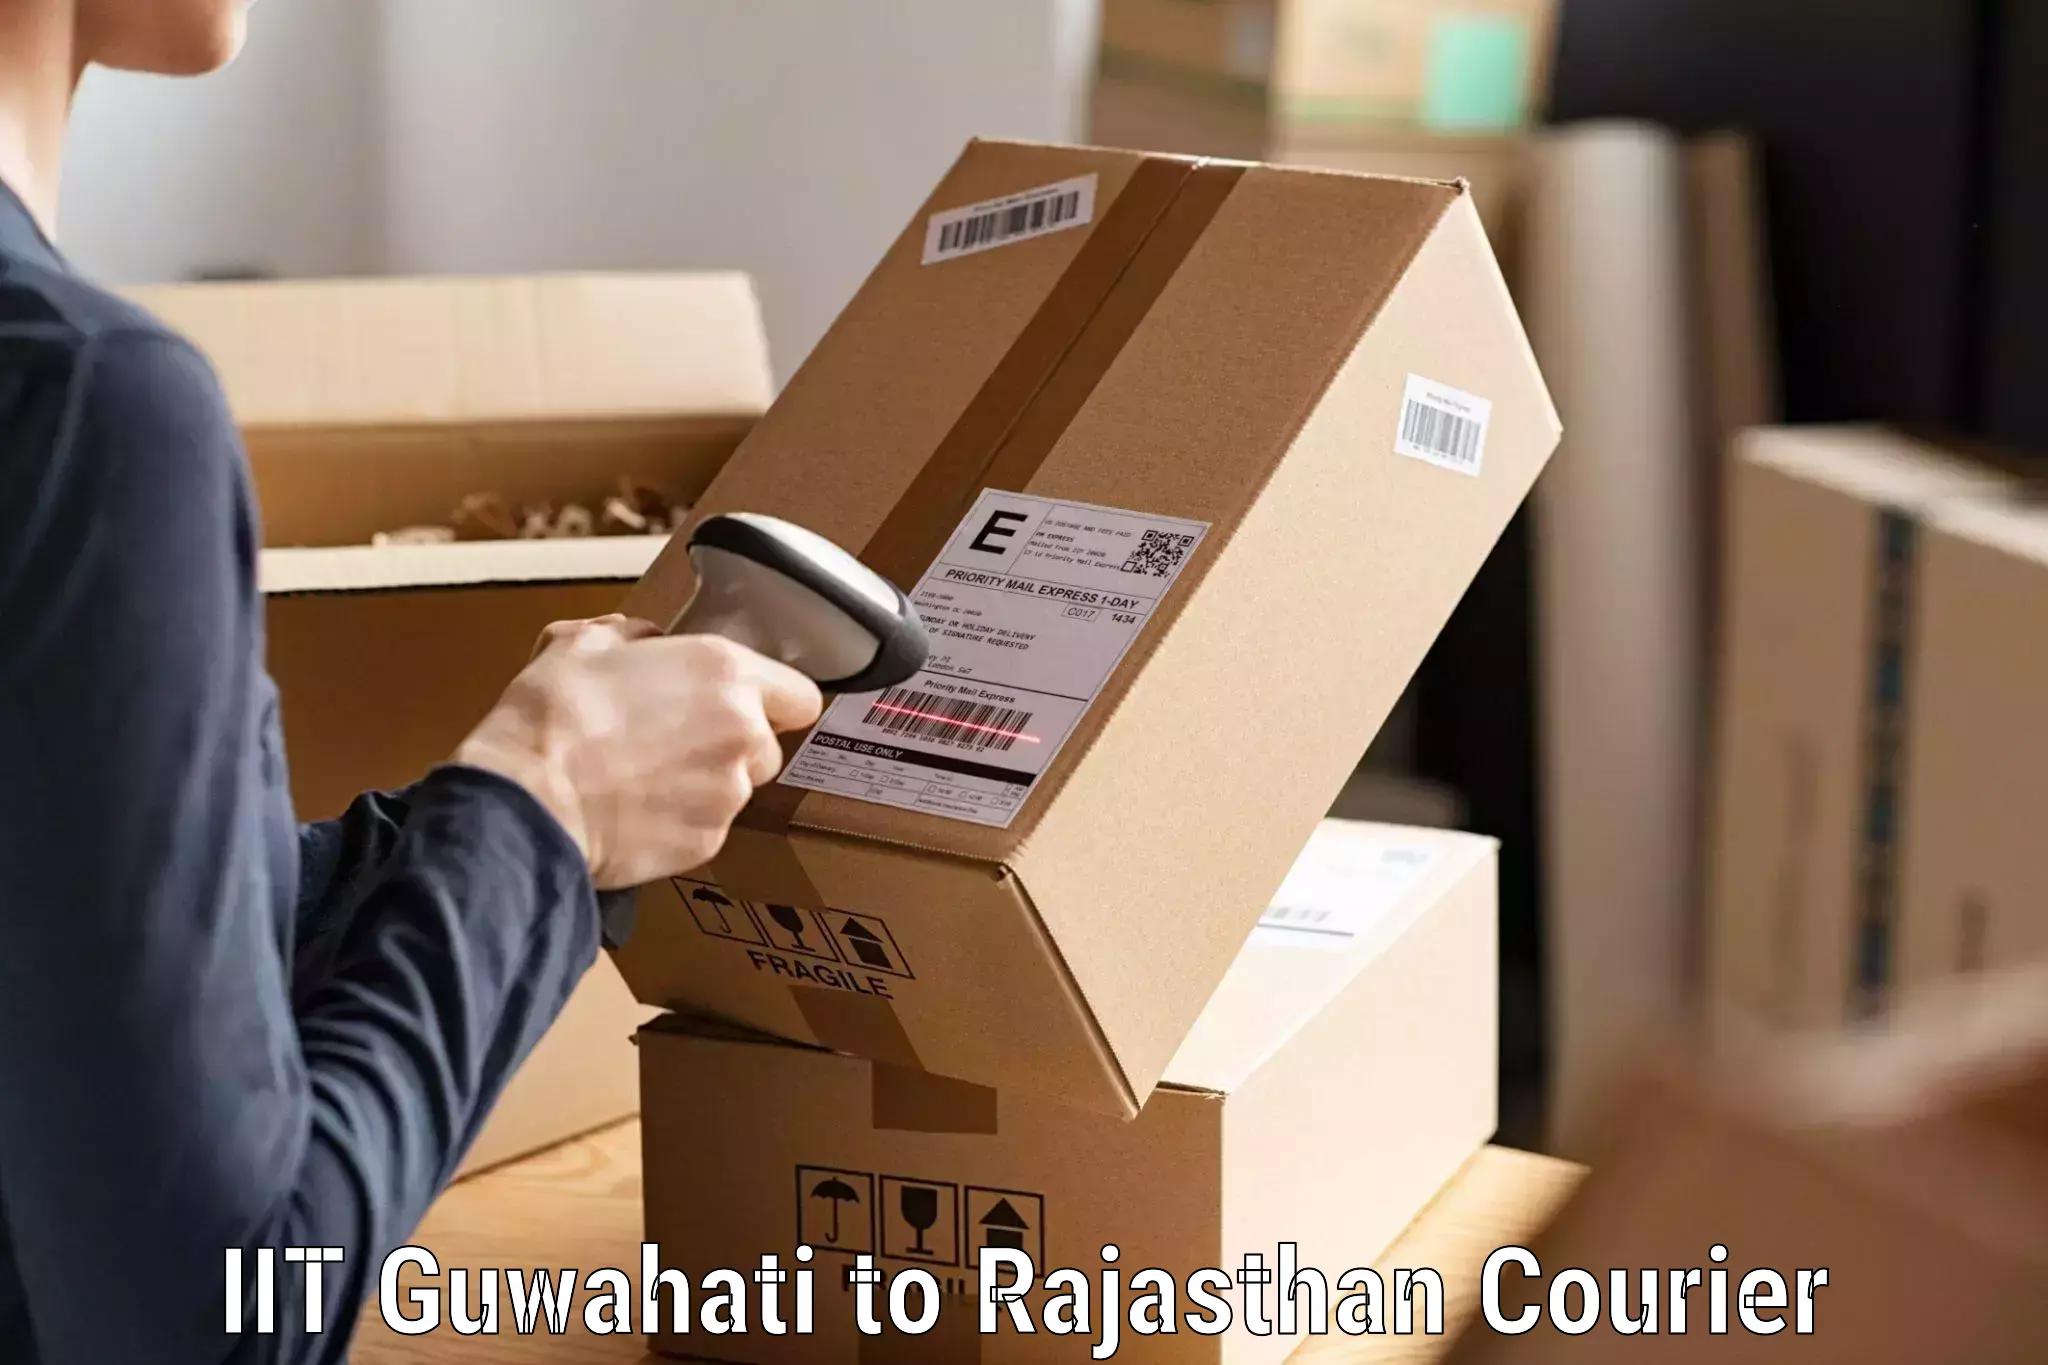 Courier service comparison IIT Guwahati to Malpura